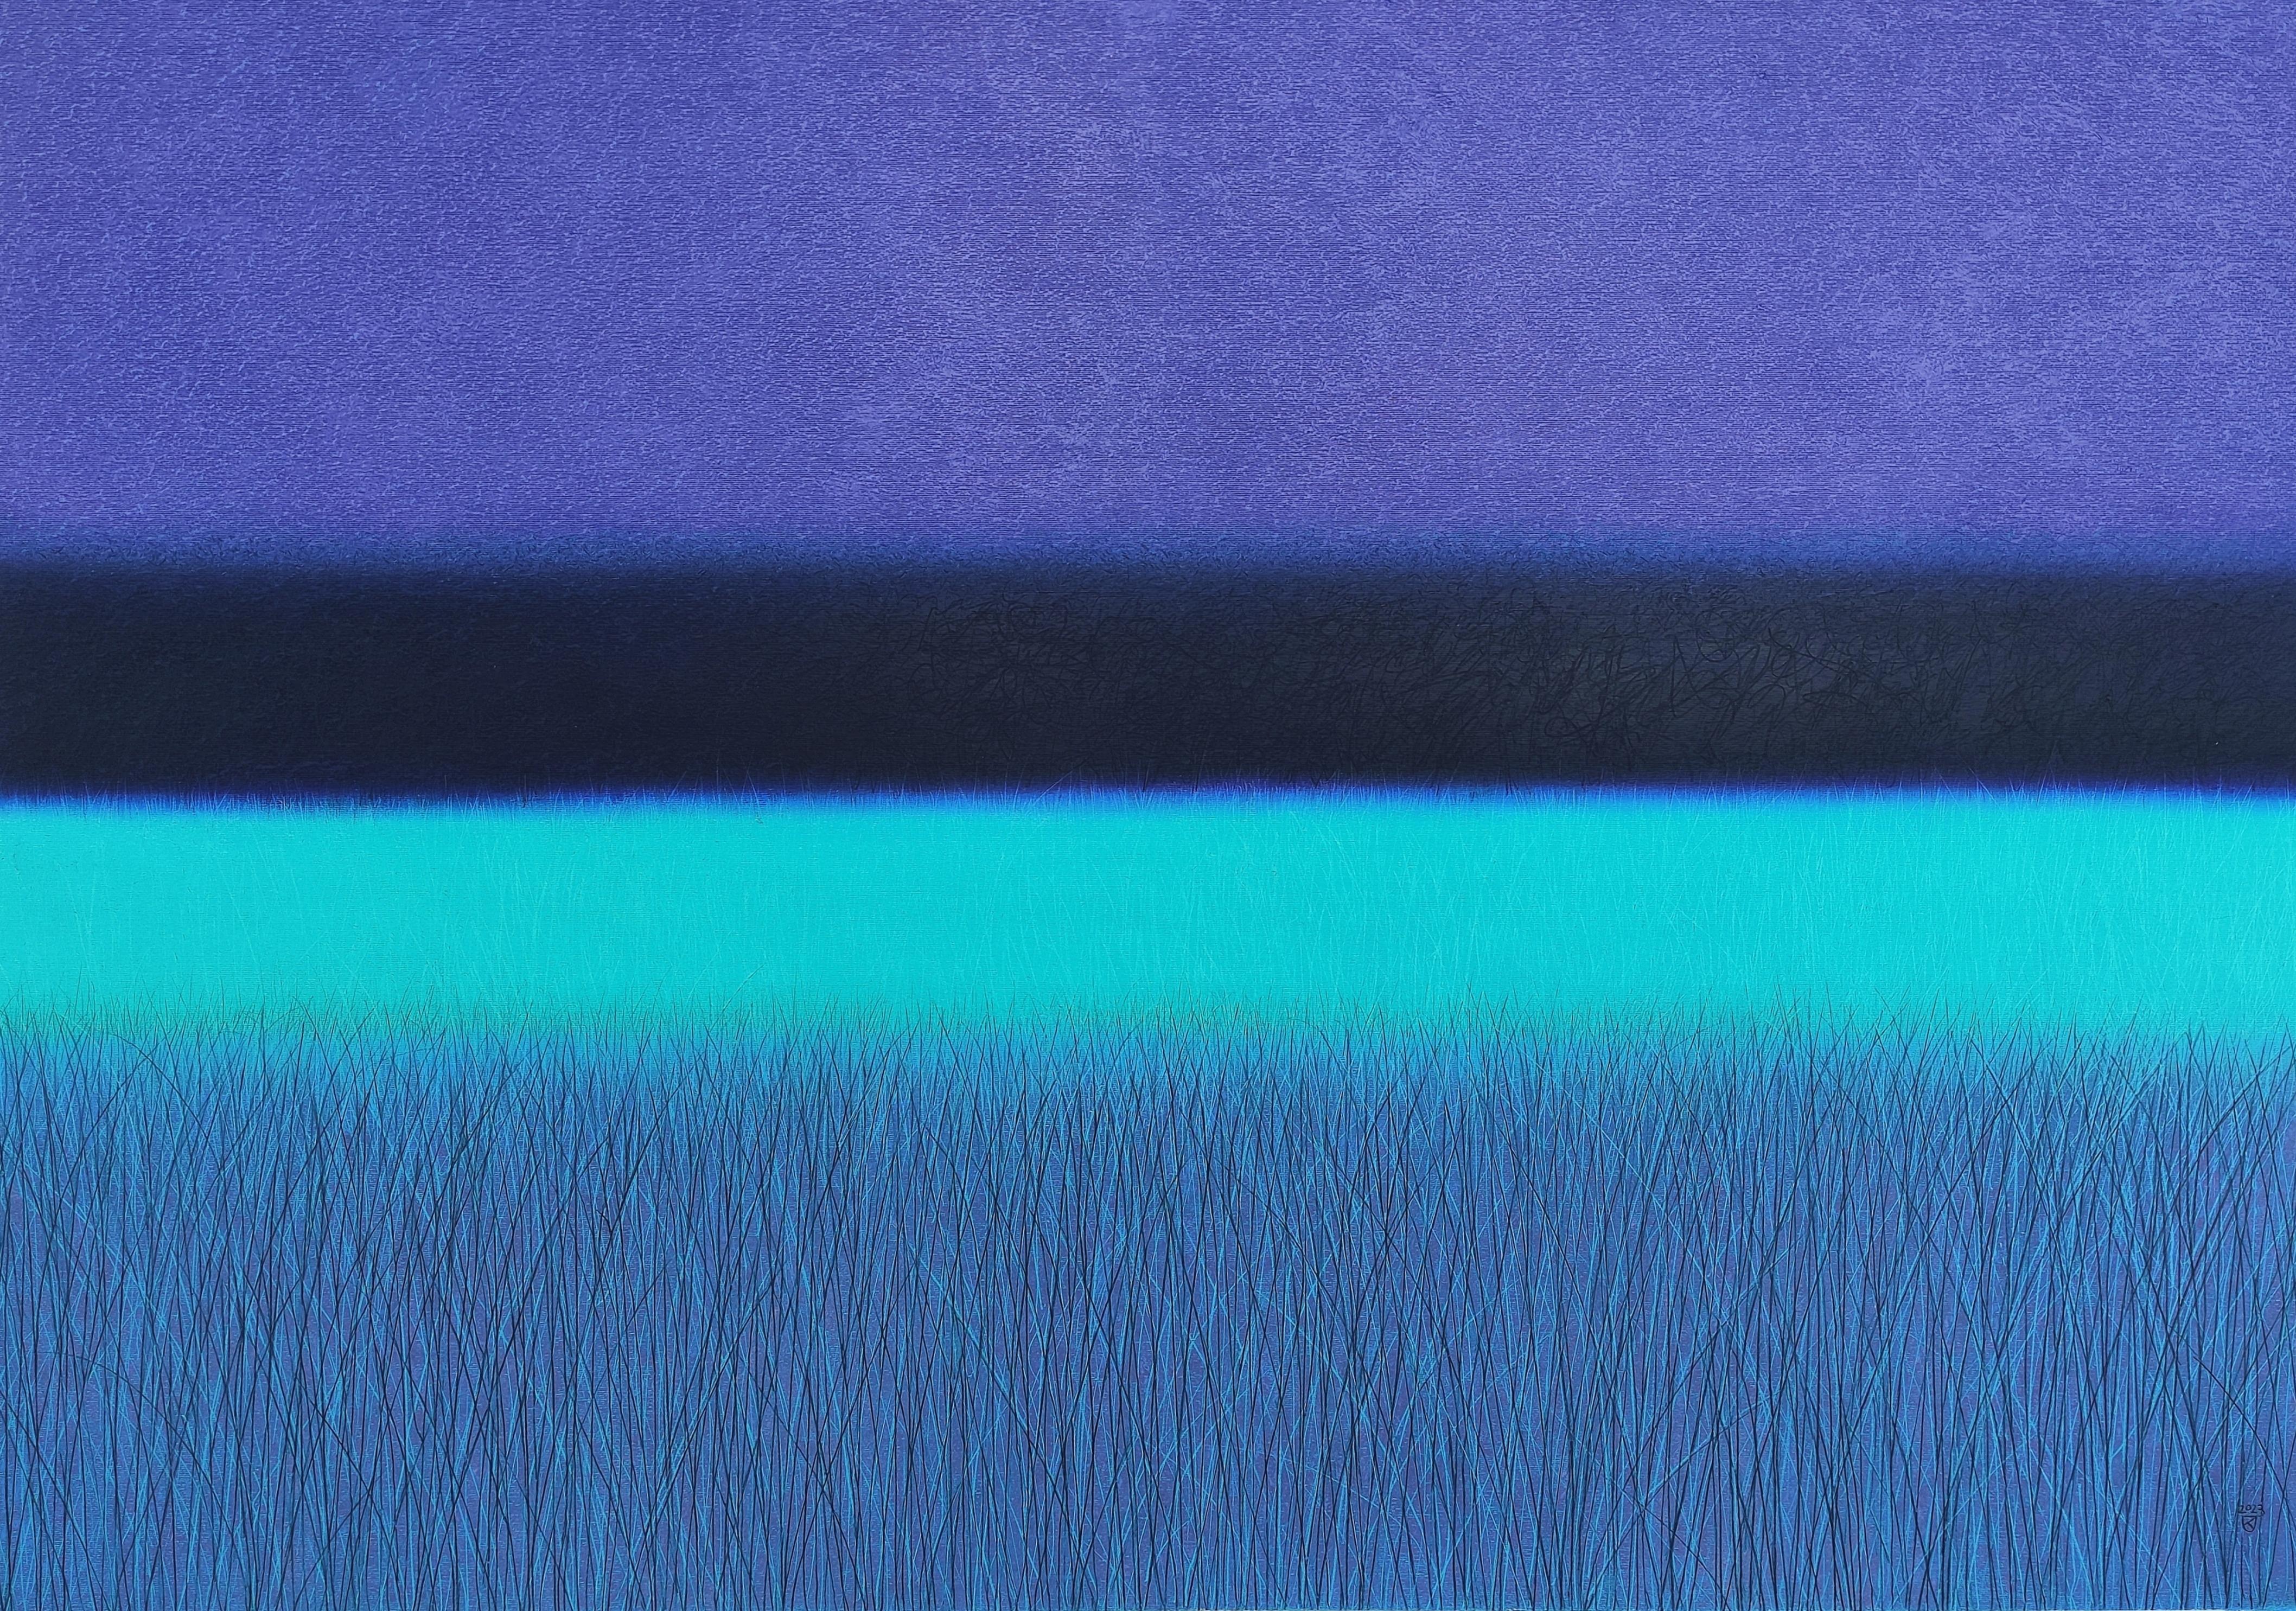 Janusz Kokot Landscape Art - Turquoise Savannah  - Contemporary Landscape Oil Pastel Painting, Vibrant Colors